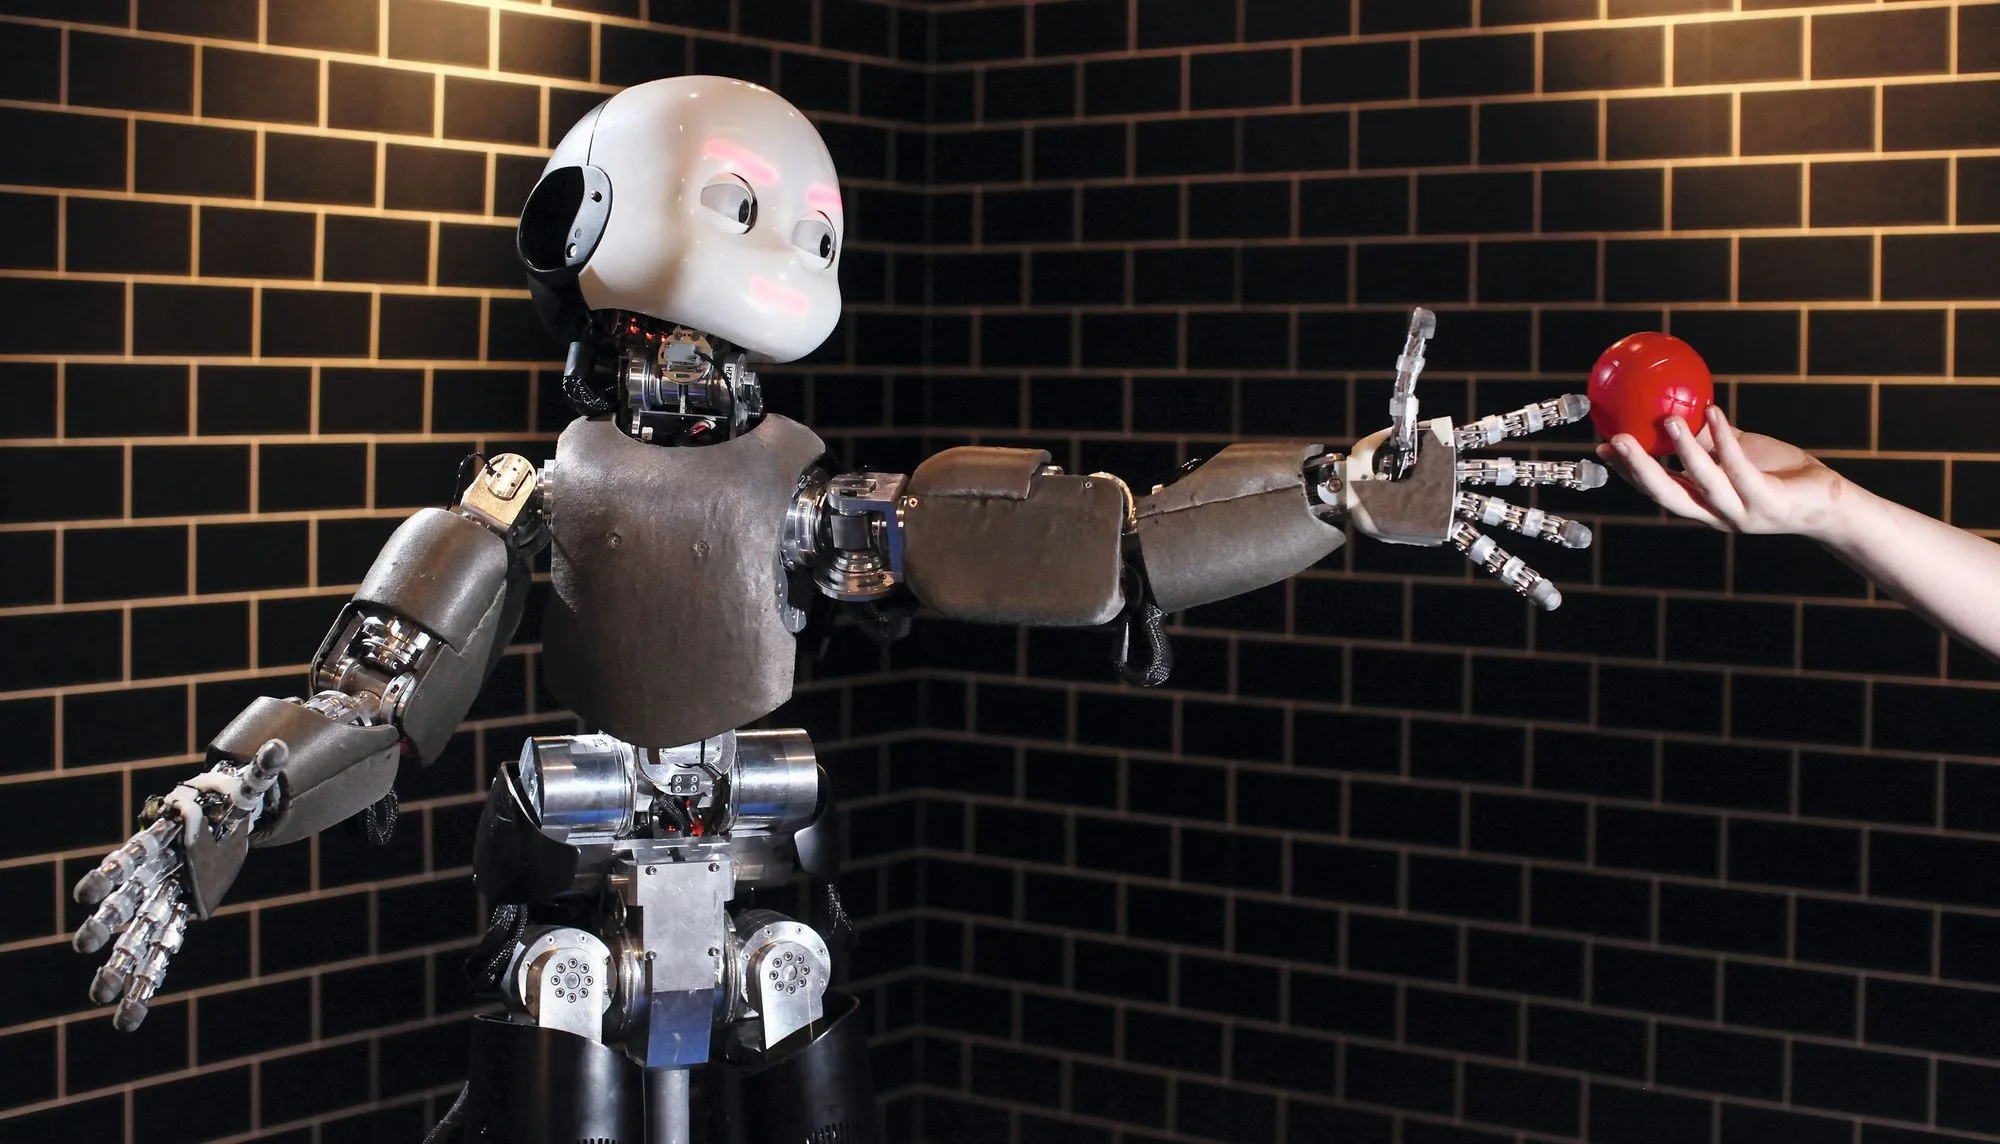 Un robot iCub développé par l'université de Gênes (Italie) et présenté lors de l'exposition « Robotville » au Science Museum, Londres, Grande-Bretagne, 2011.